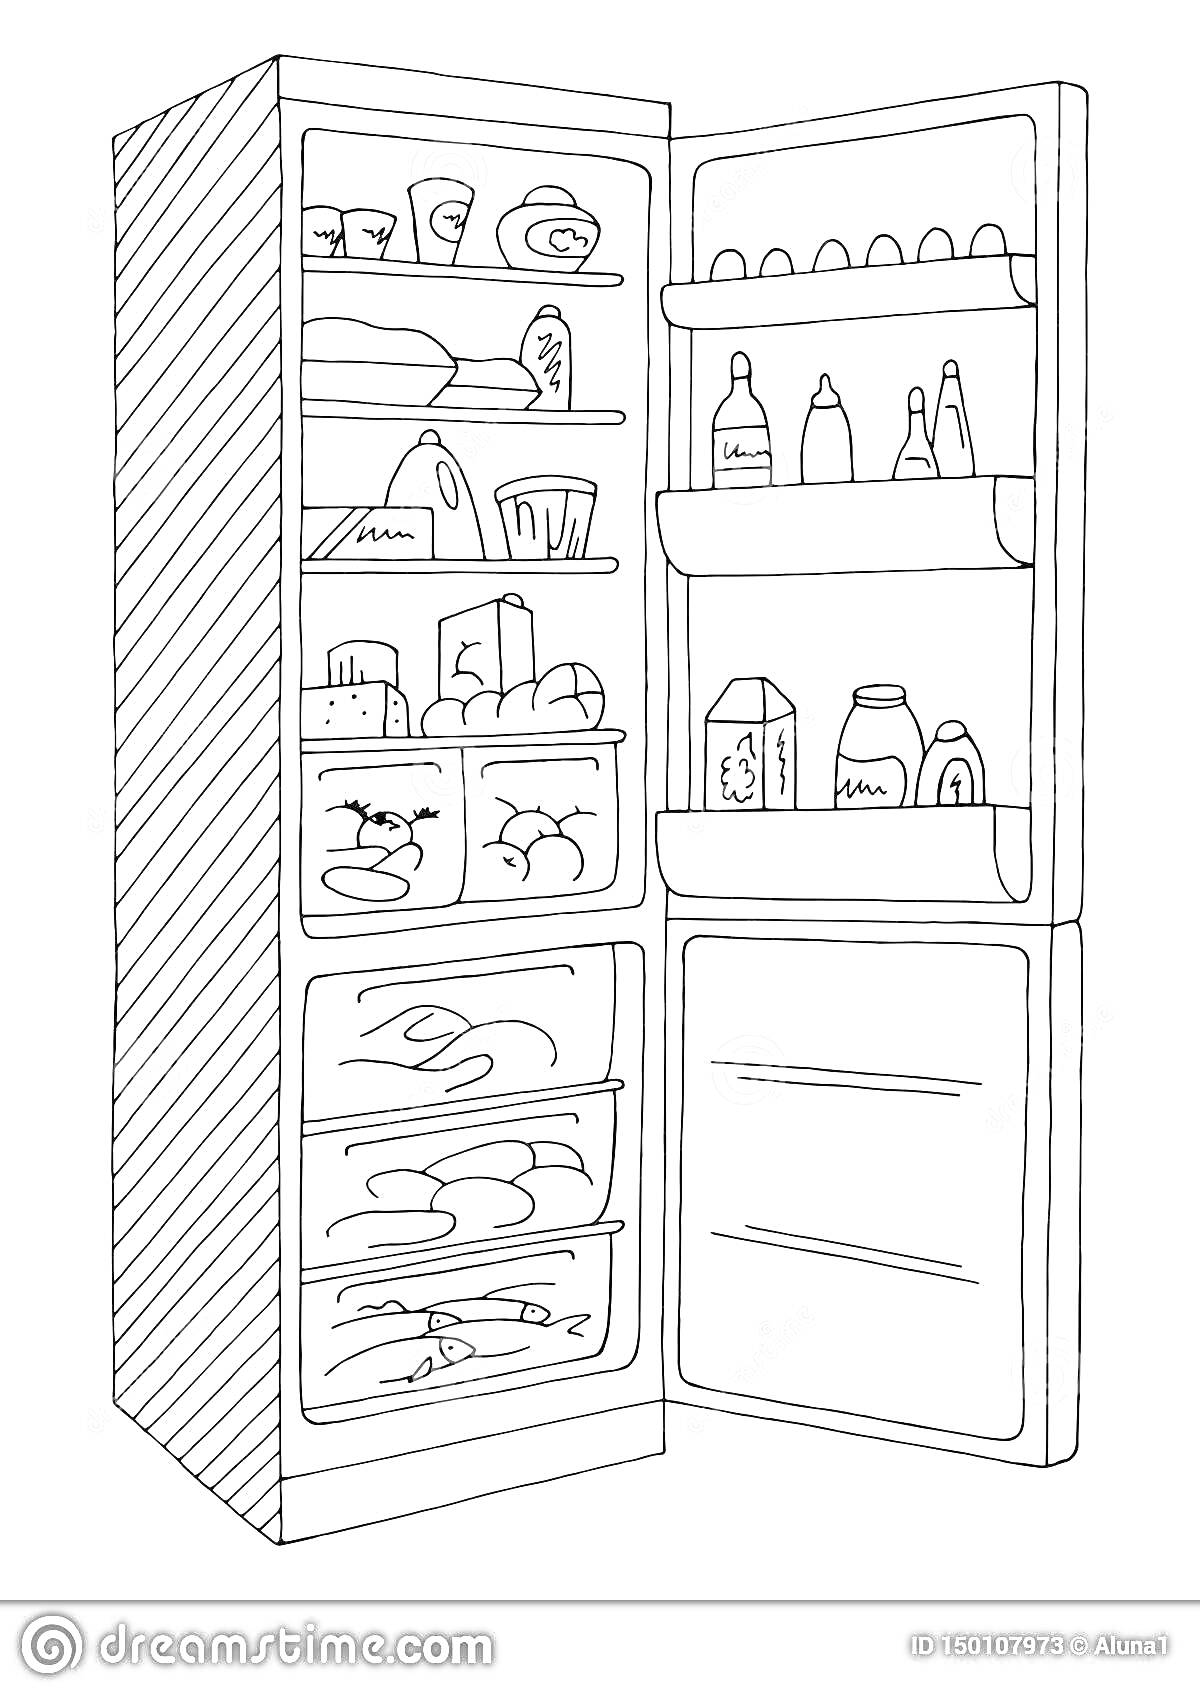 Раскраска Холодильник с продуктами, включающими банки, бутылки, яйца, овощи, фрукты, коробки и контейнеры на полках и в ящиках